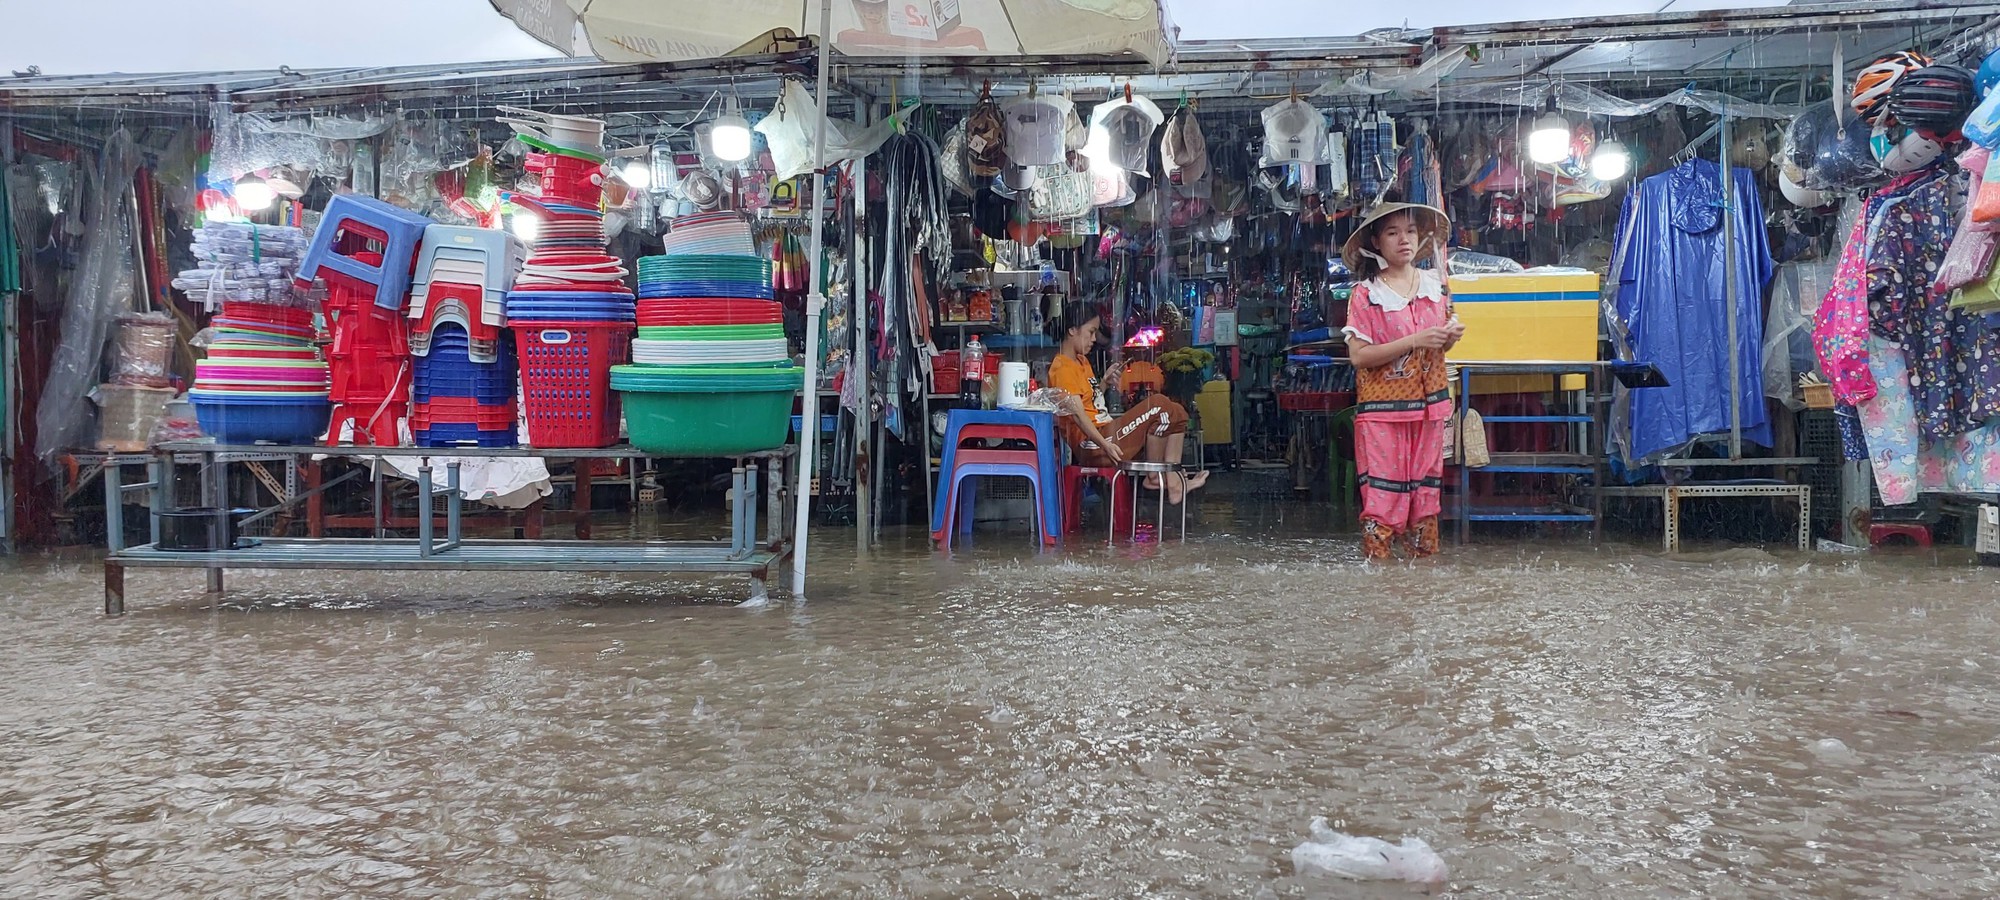 Đường phố Đà Nẵng lại ngập sau mưa lớn, ô tô, xe máy bì bõm lội nước - Ảnh 10.